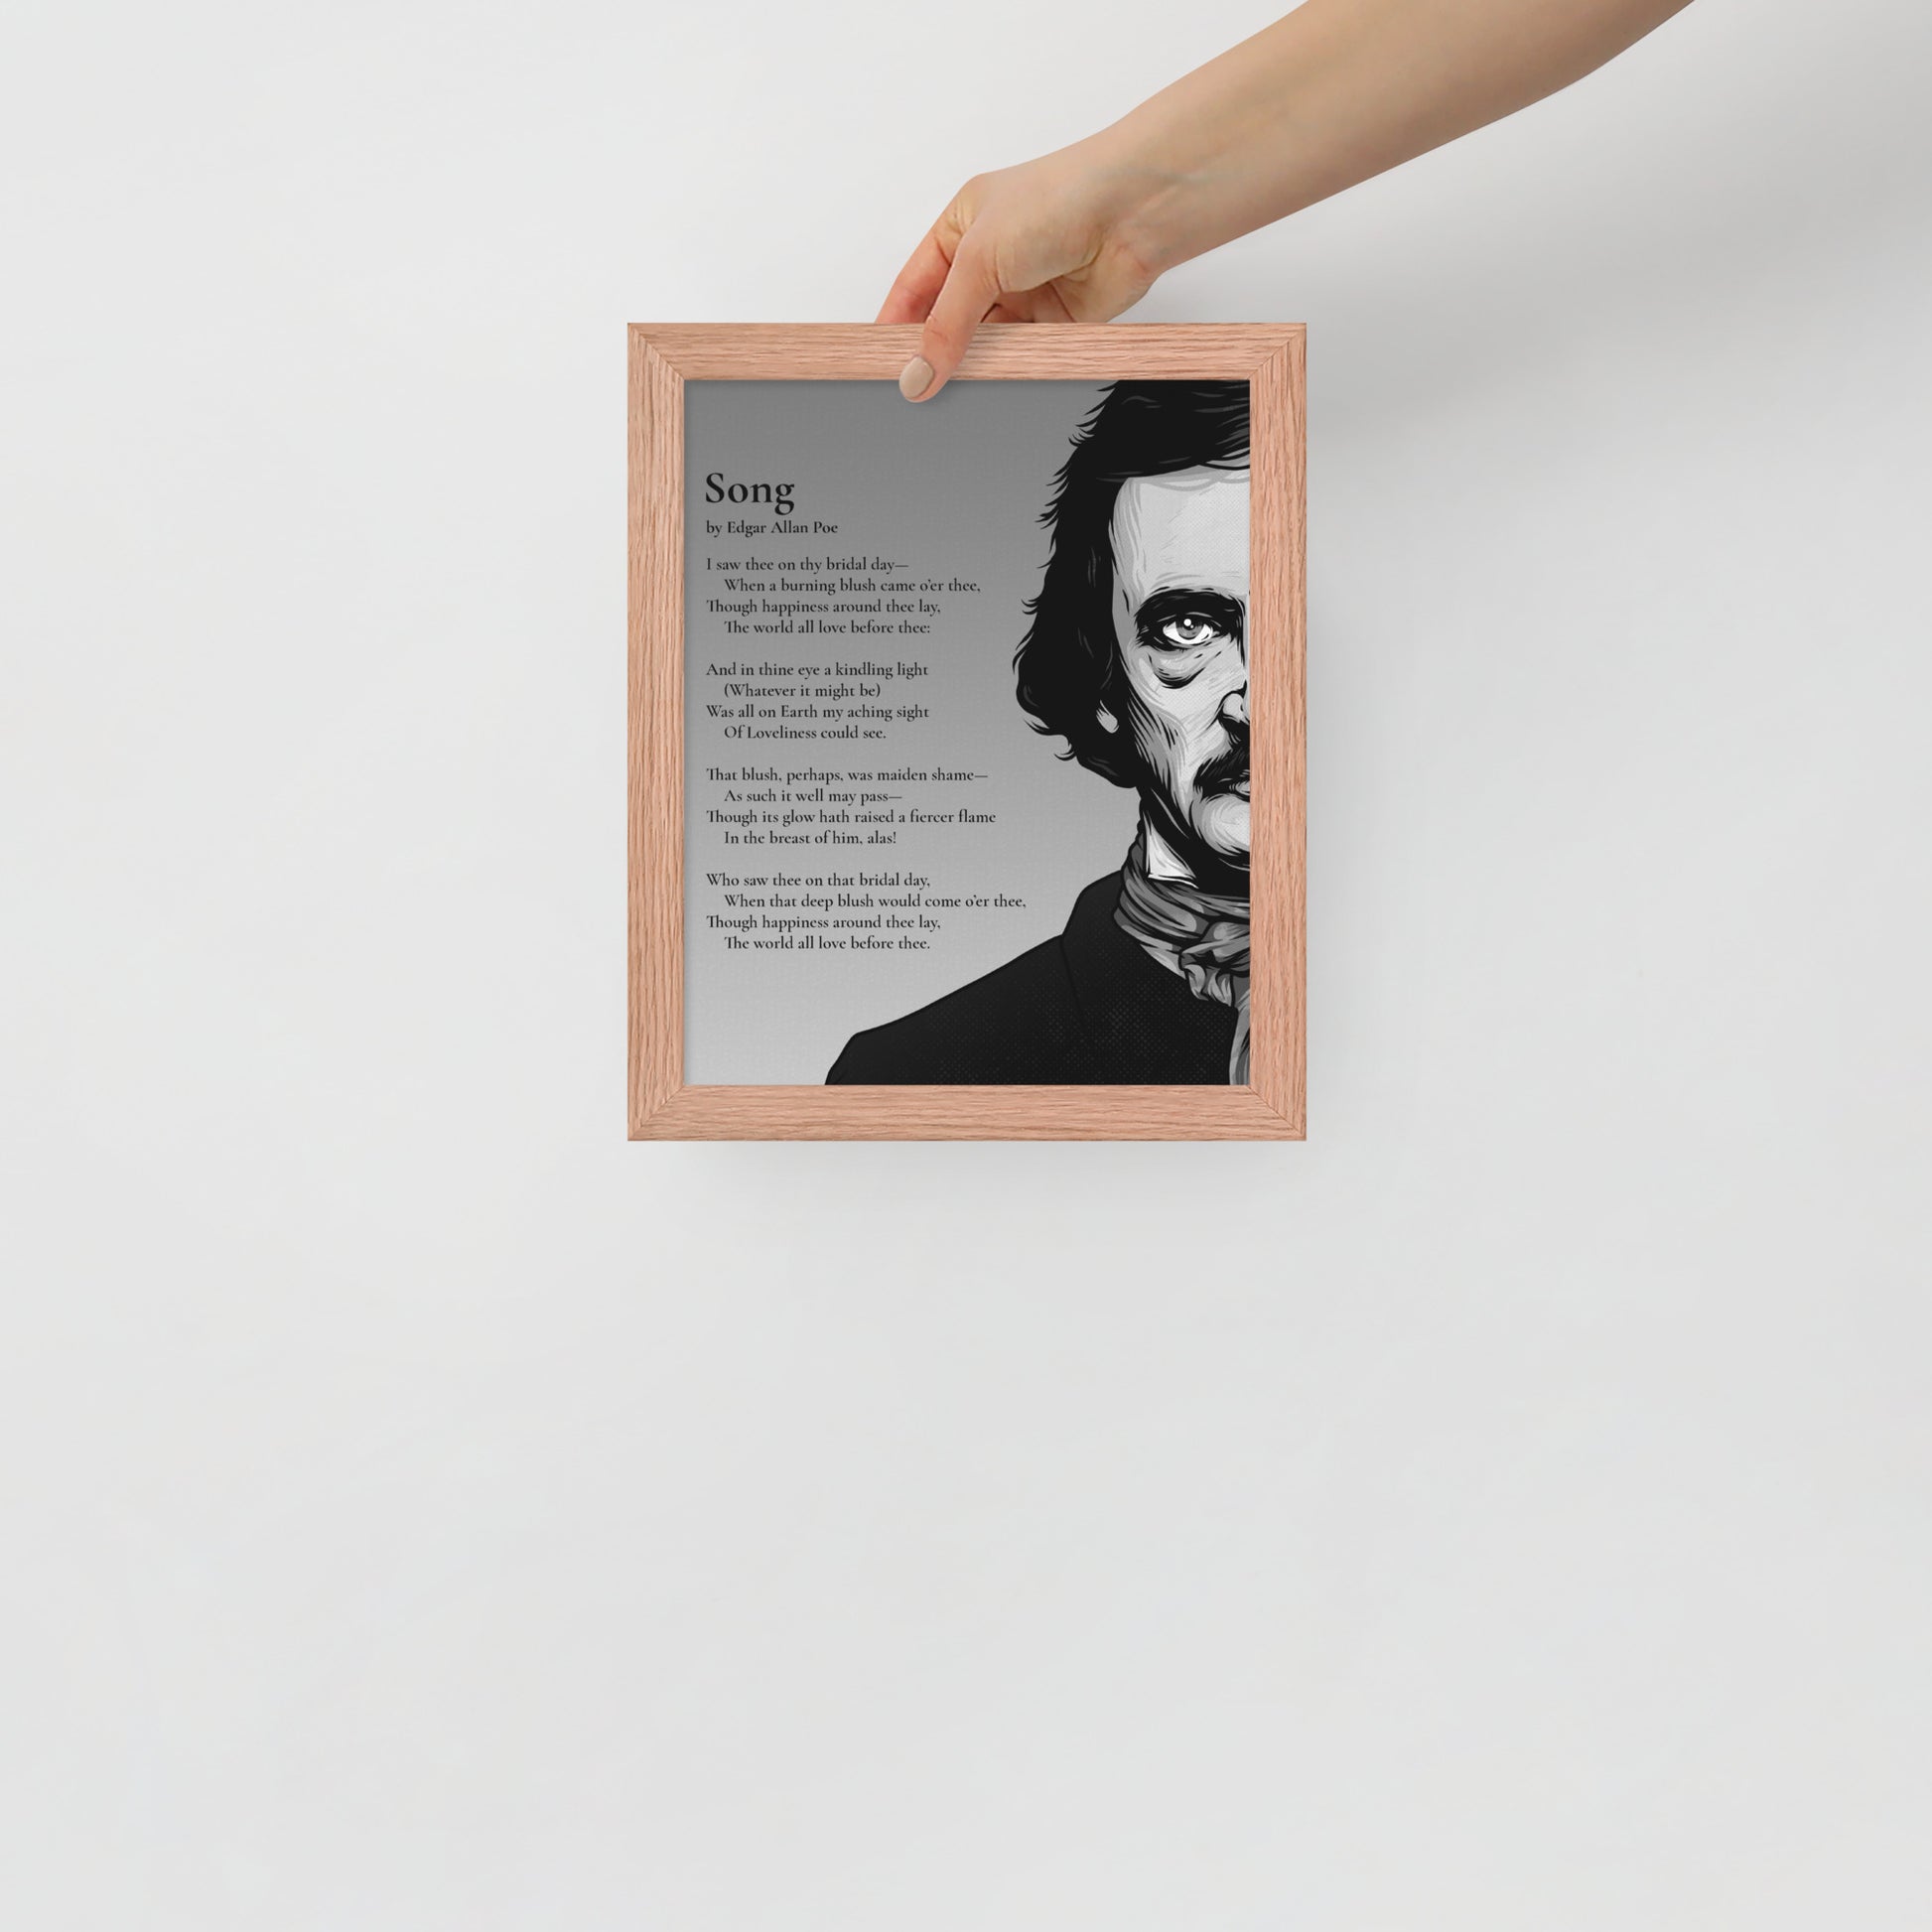 Edgar Allan Poe's 'Song' Framed Matted Poster - 8 x 10 Red Oak Frame